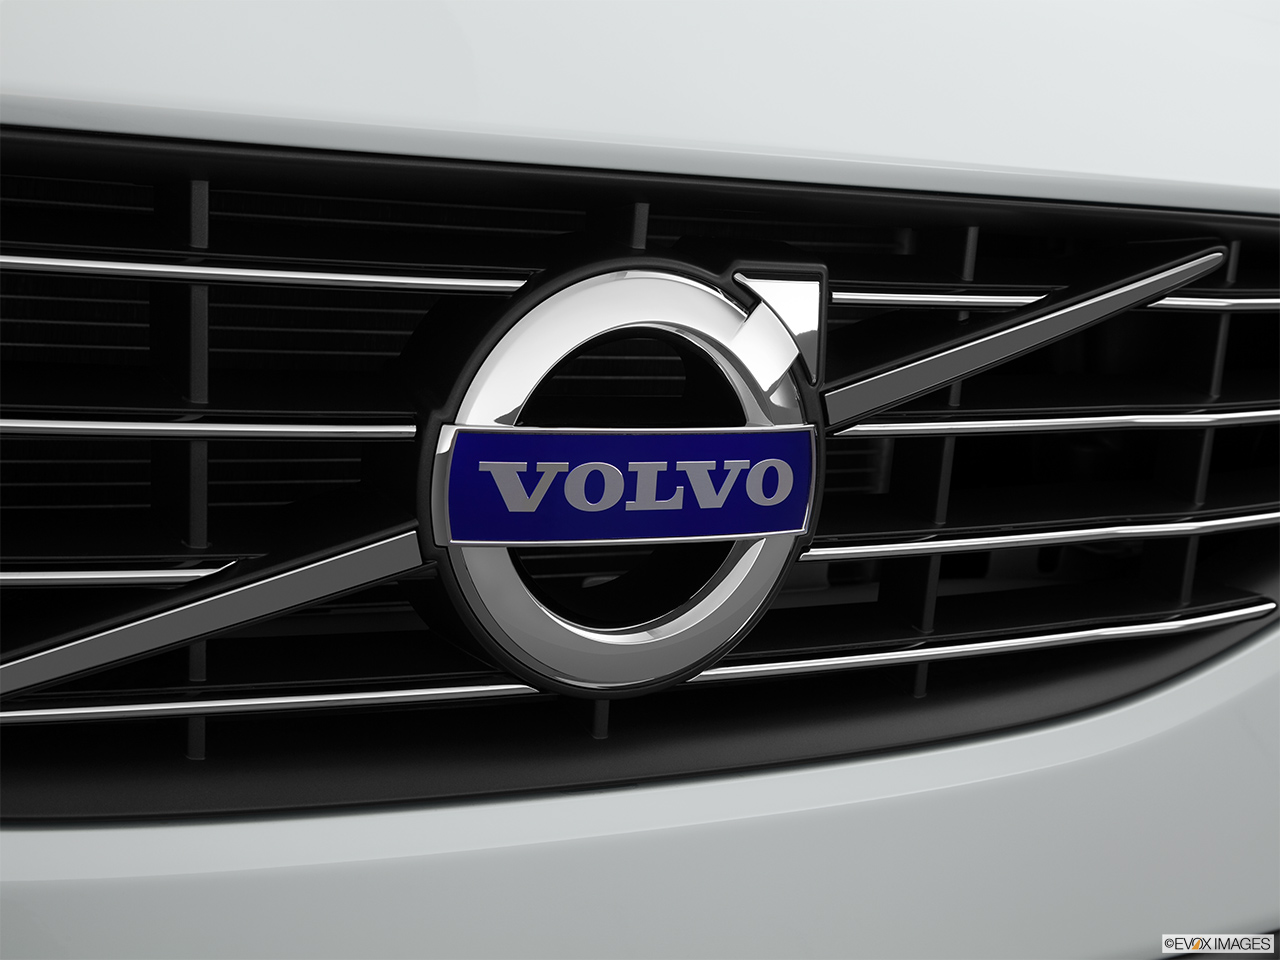 2015 Volvo V60 Premier Plus Rear manufacture badge/emblem 